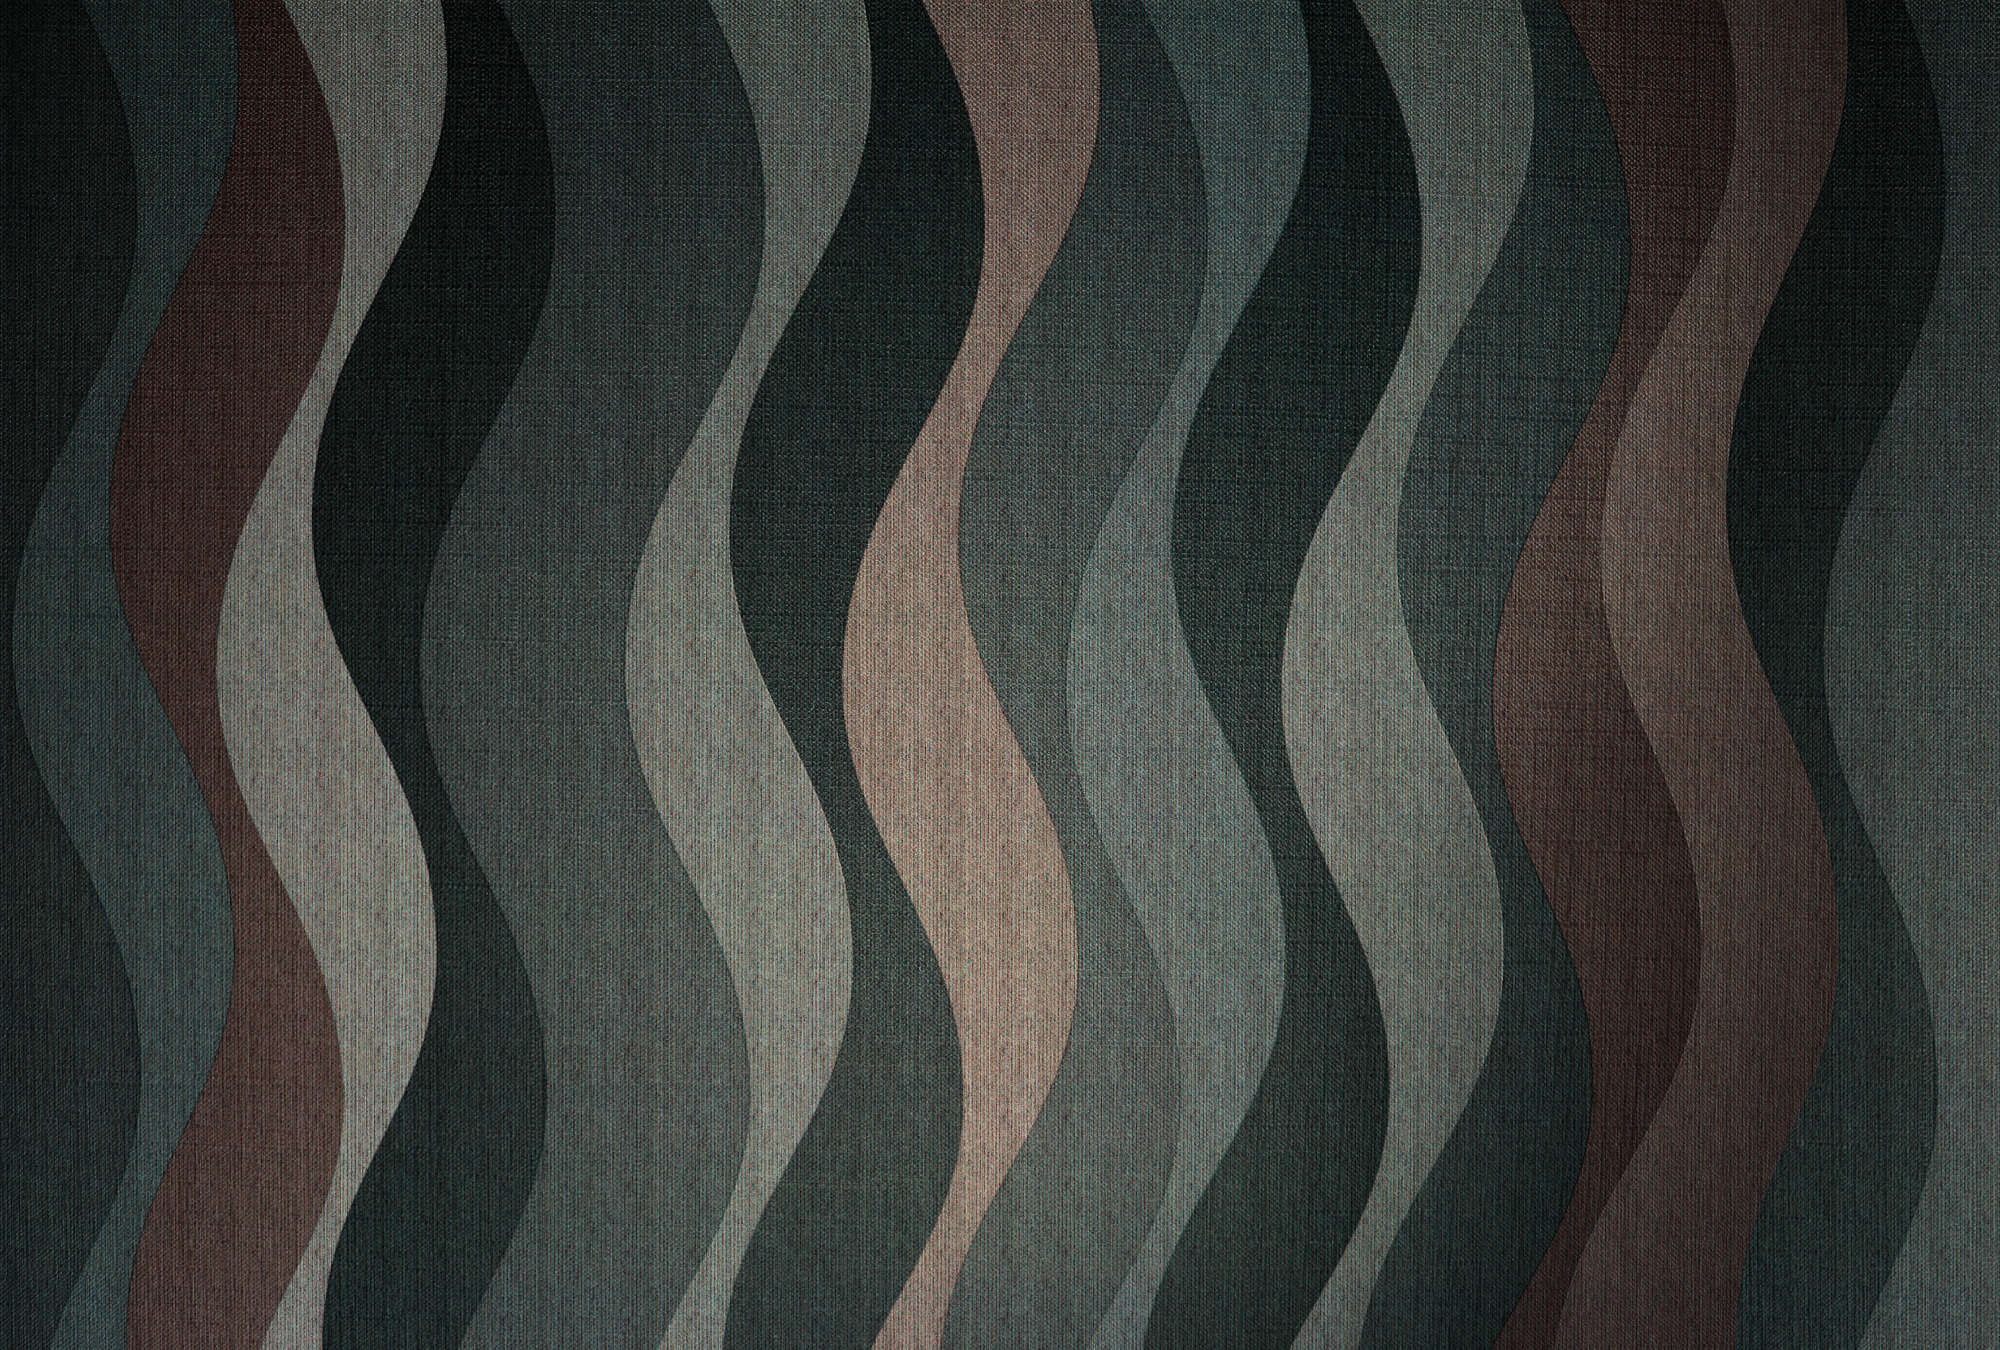             Savoy 1 - Dark Behang Retro Grafische Golven Patroon
        